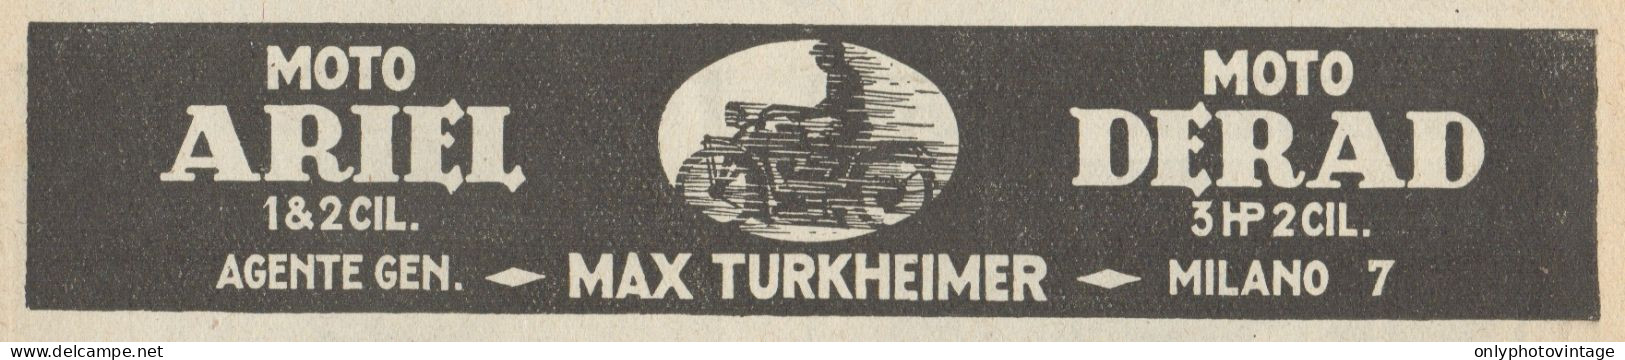 Moto ARIEL & DERAD - Pubblicità D'epoca - 1923 Old Advertising - Publicidad